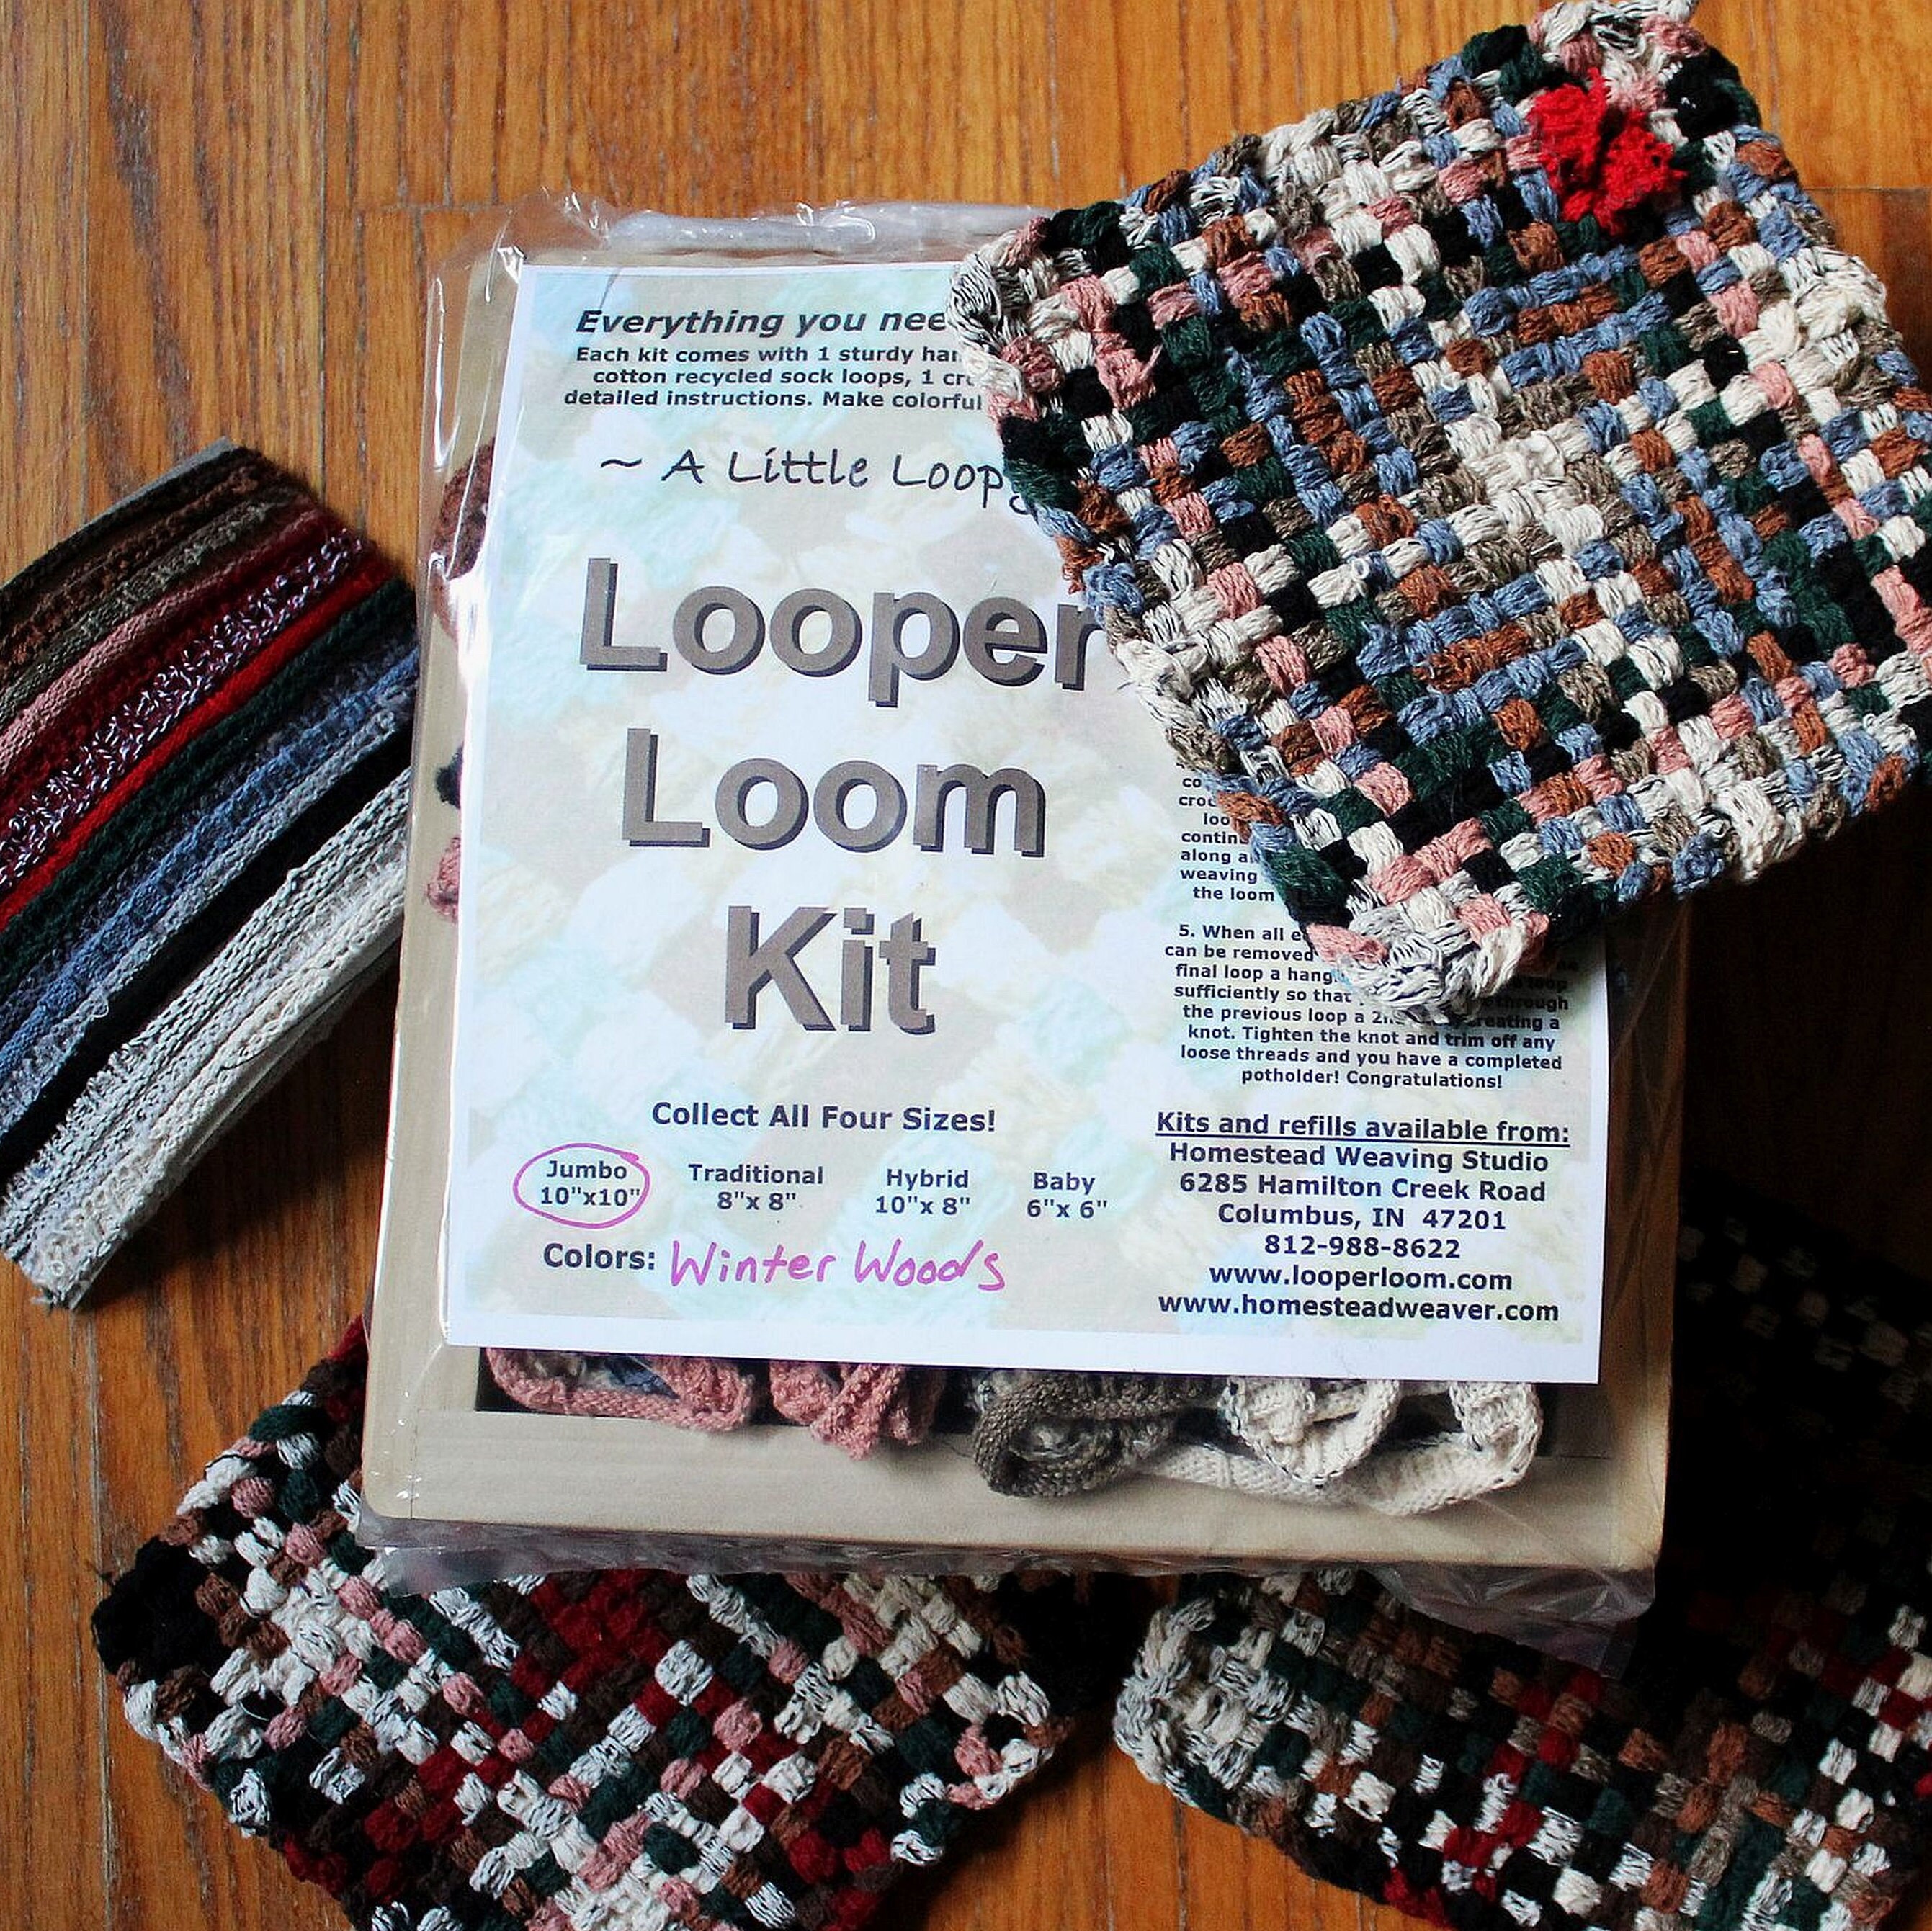 Weaving Loops and Loom Craft Kit